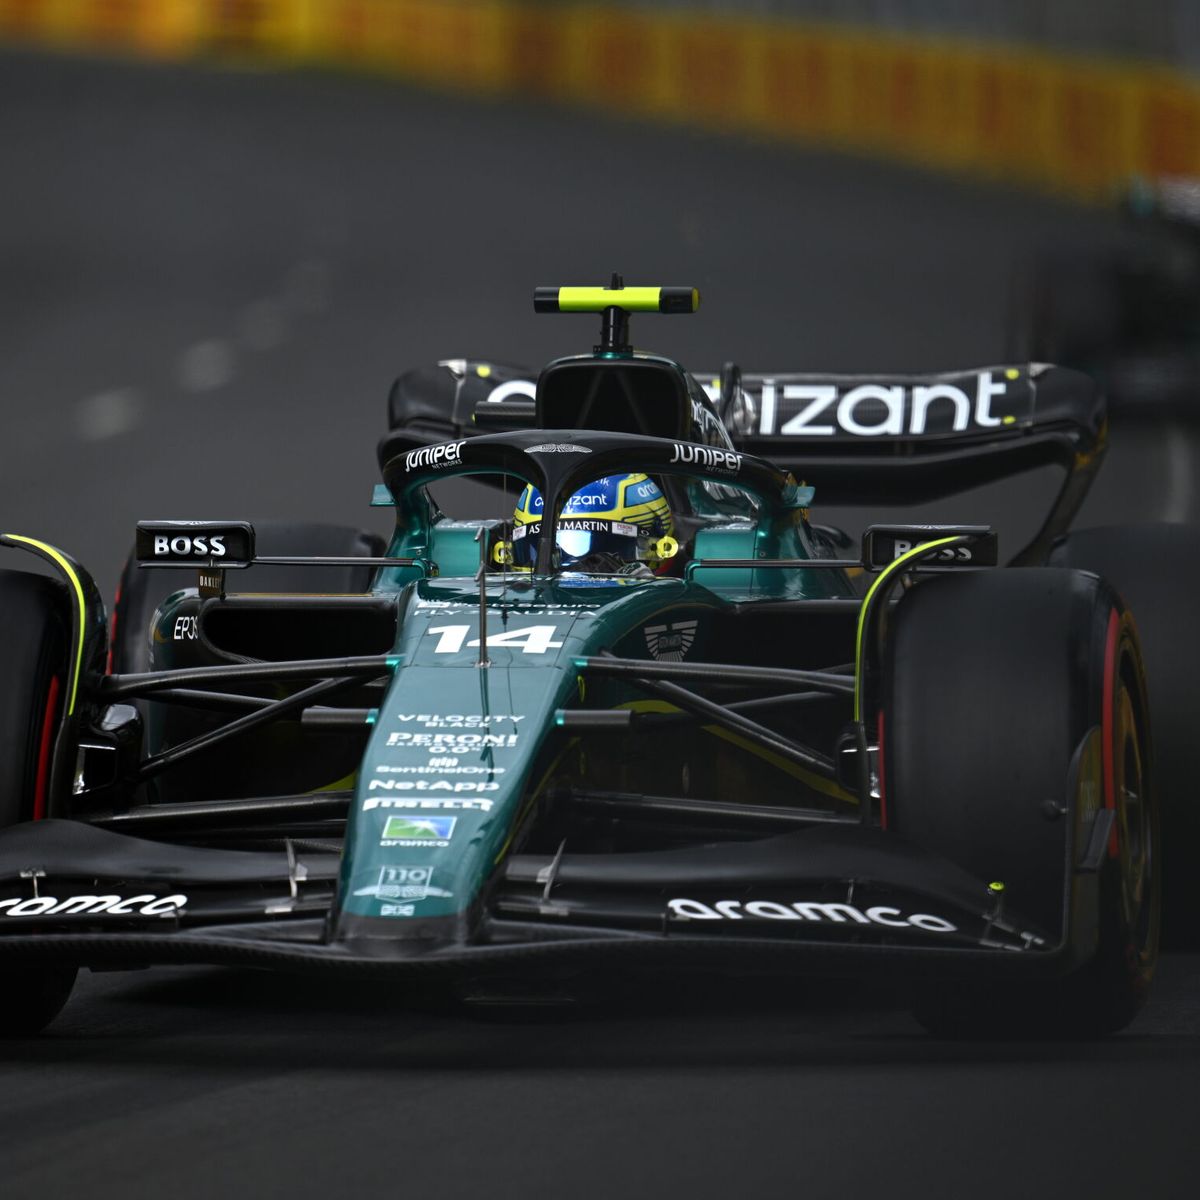 Campeonato de Pilotos en F1 2023: Así va tabla tras GP de Miami